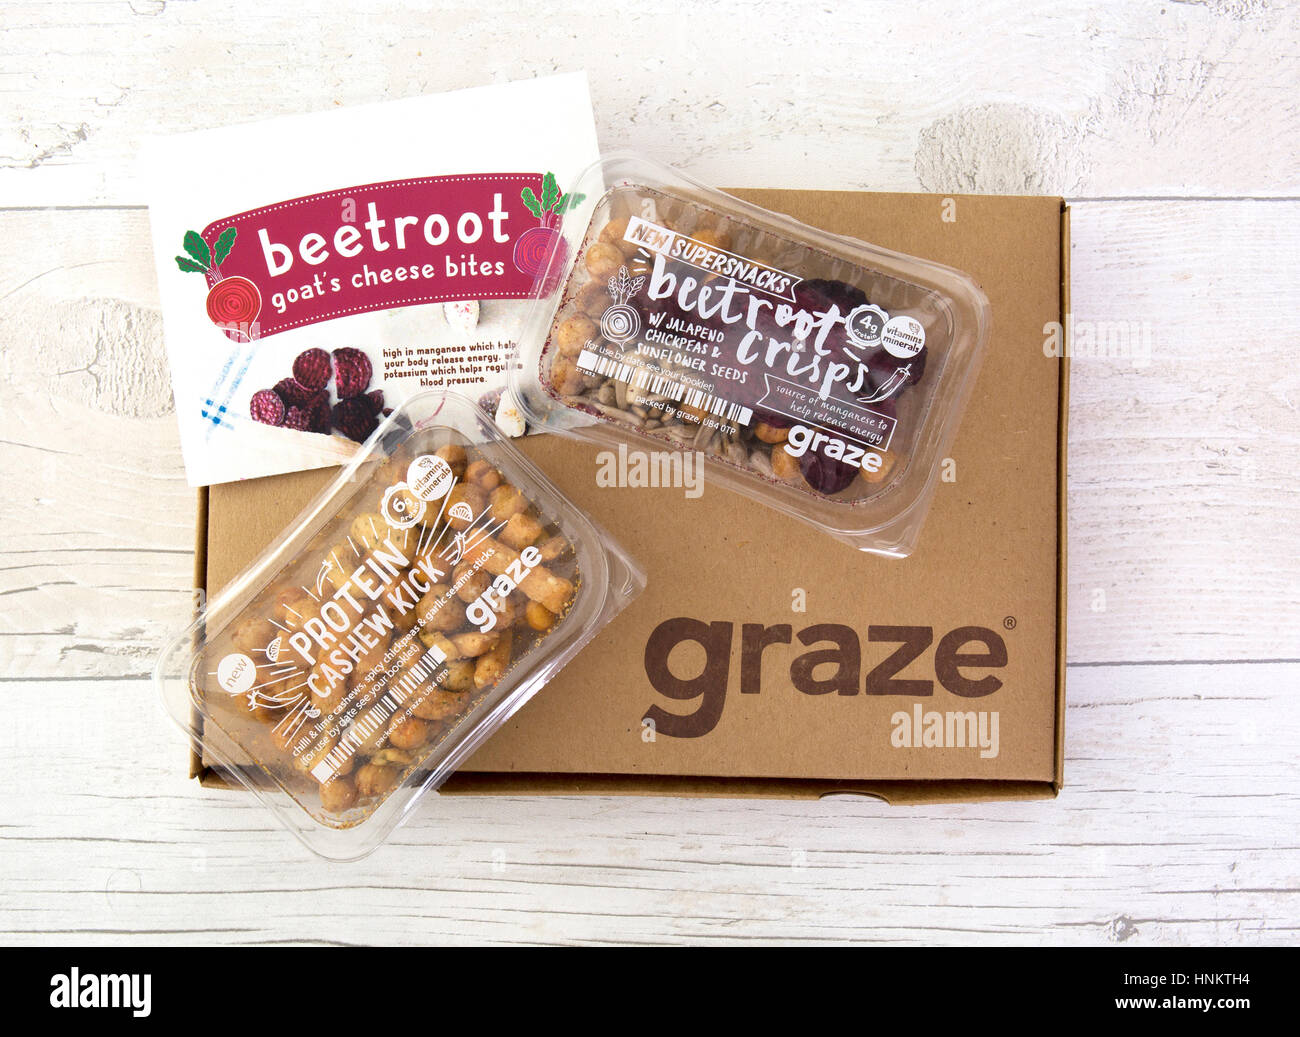 SWINDON, UK - 14. Februar 2017: Neue 2017 Snackspiration grasen Box, neu erfunden von graze.com, Naschen, gesunde Snacks, geliefert an Ihre Tür oder Arbeit Stockfoto